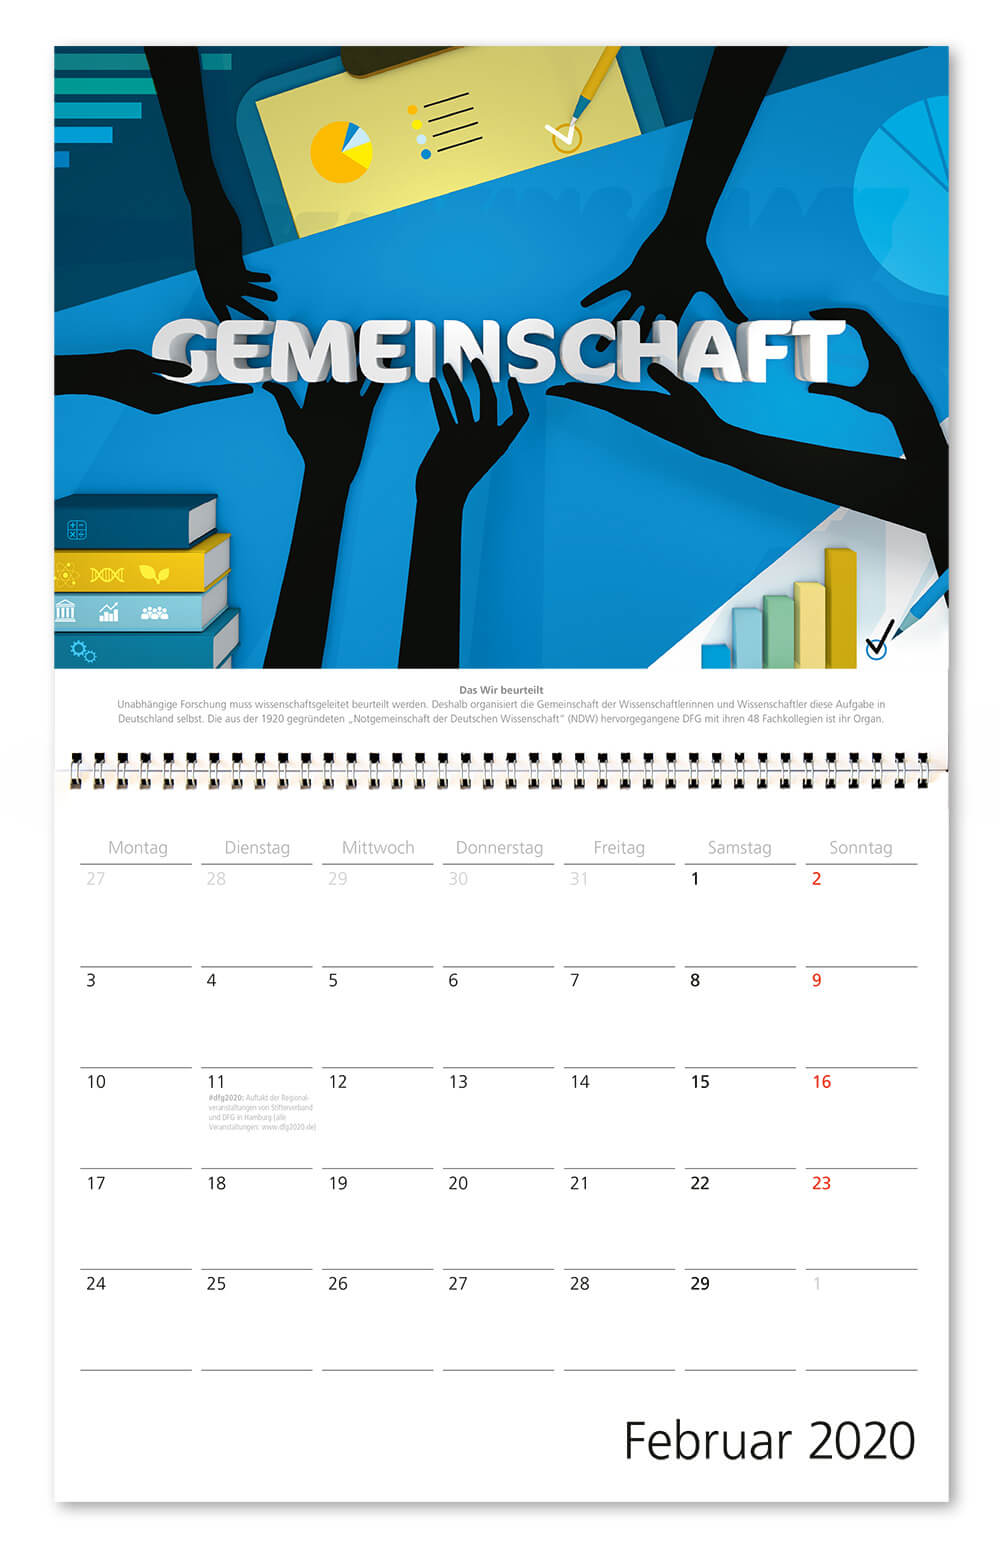 100 Jahre Deutsche Forschungsgemeinschaft / DFG / Wandkalender 2020 / Februar: Gemeinschaft / Design: Daniela Leitner